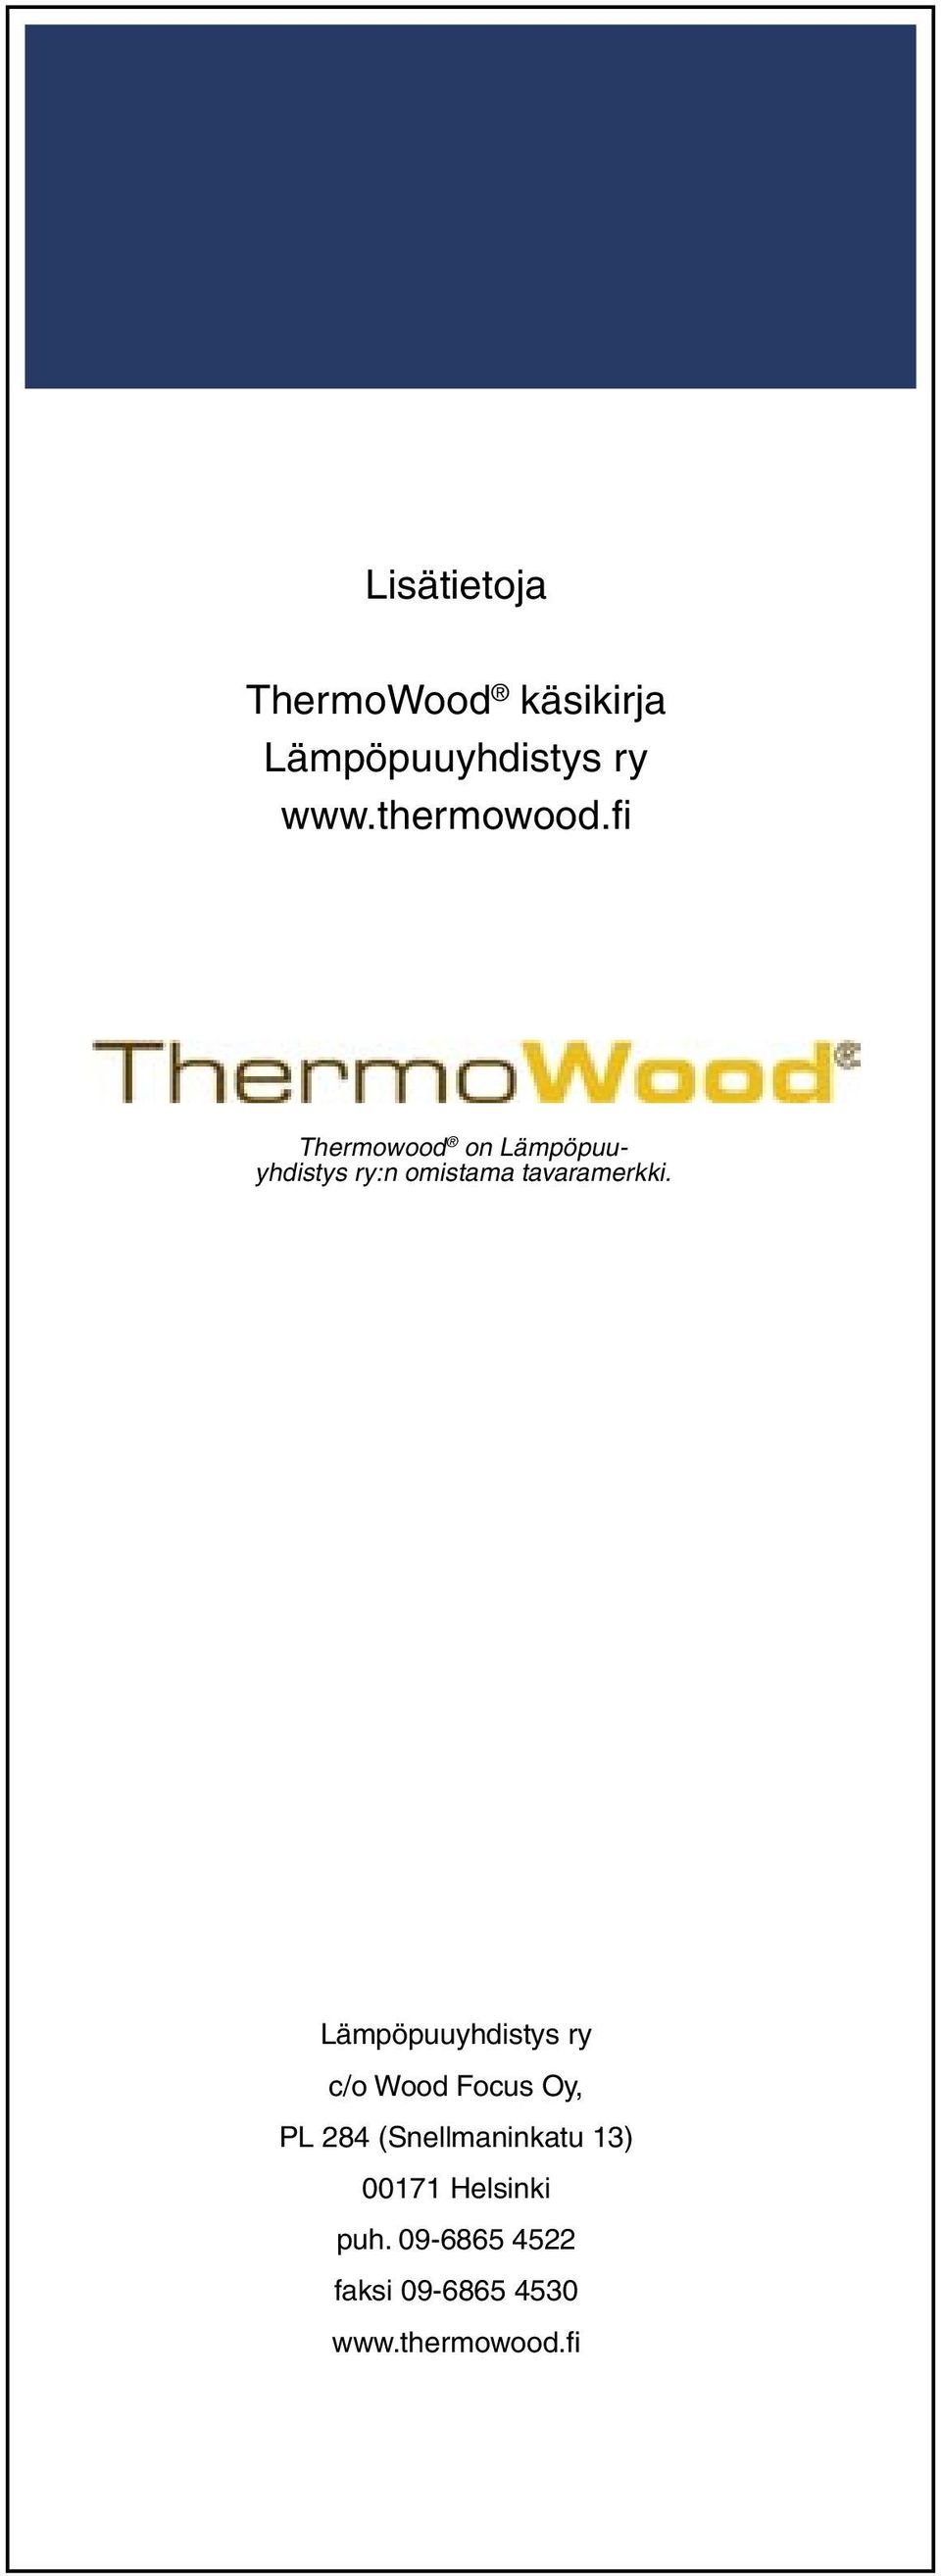 fi Thermowood on Lämpöpuuyhdistys ry:n omistama tavaramerkki.